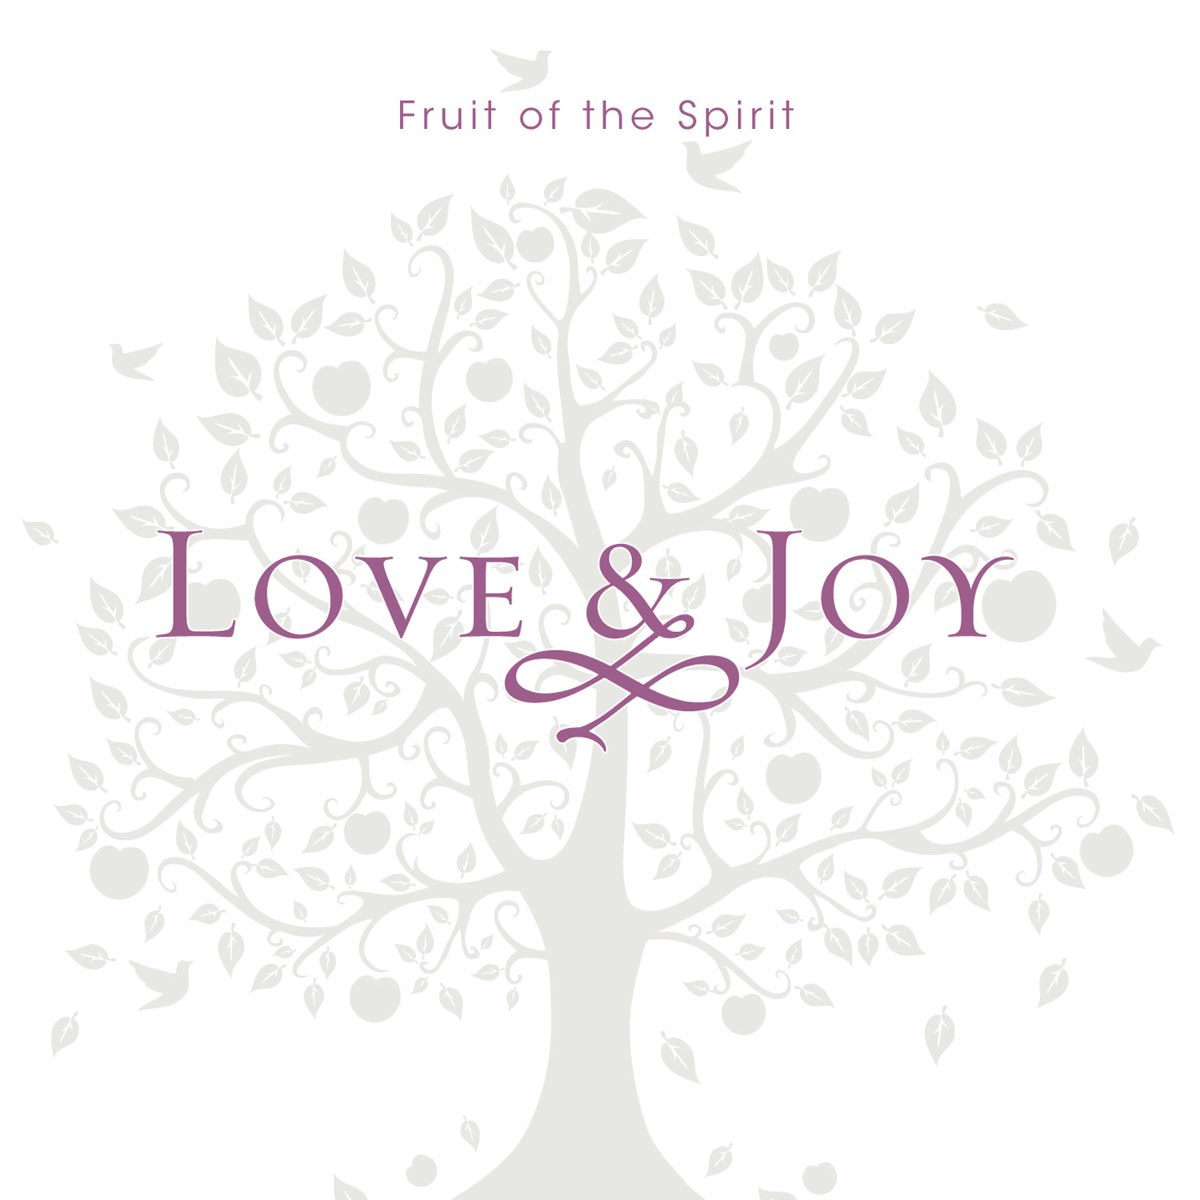 Лове джой. Loving Joy. Love-Spirit приват. Love Joy группа. Форумсмотри Love Spirit.